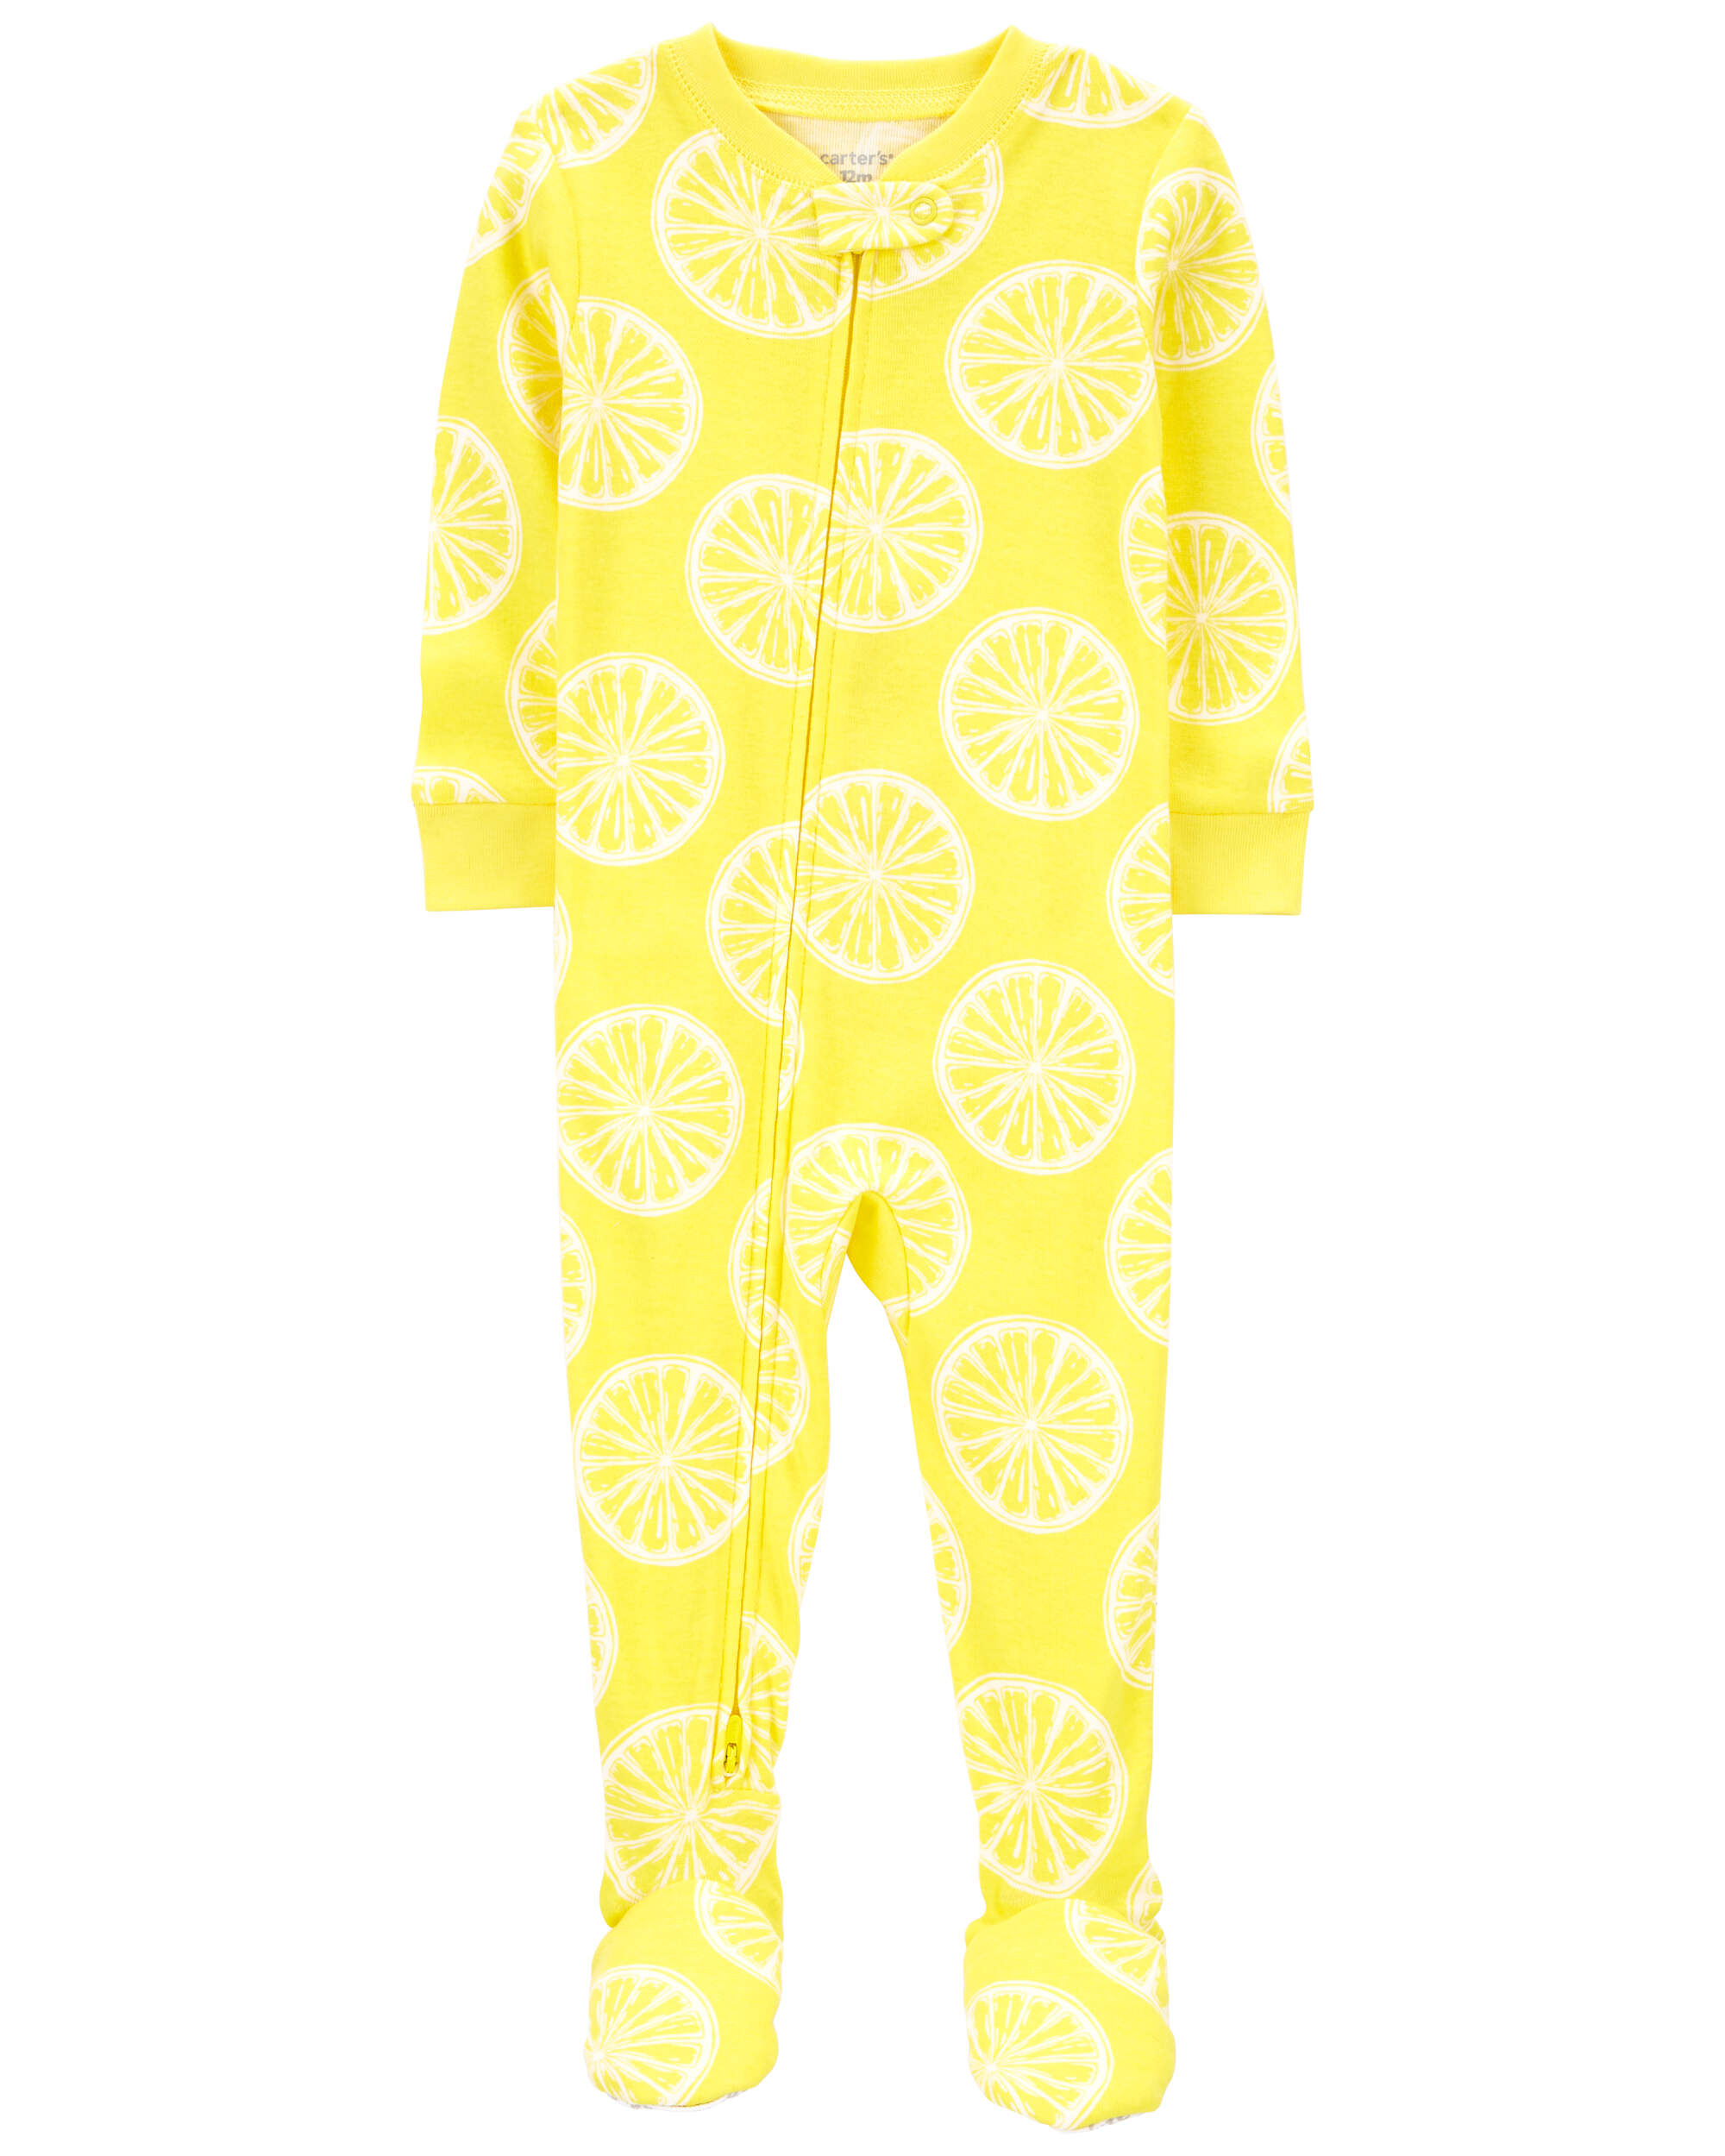 Baby 1-Piece Lemon 100% Snug Fit Cotton Footie Pajamas